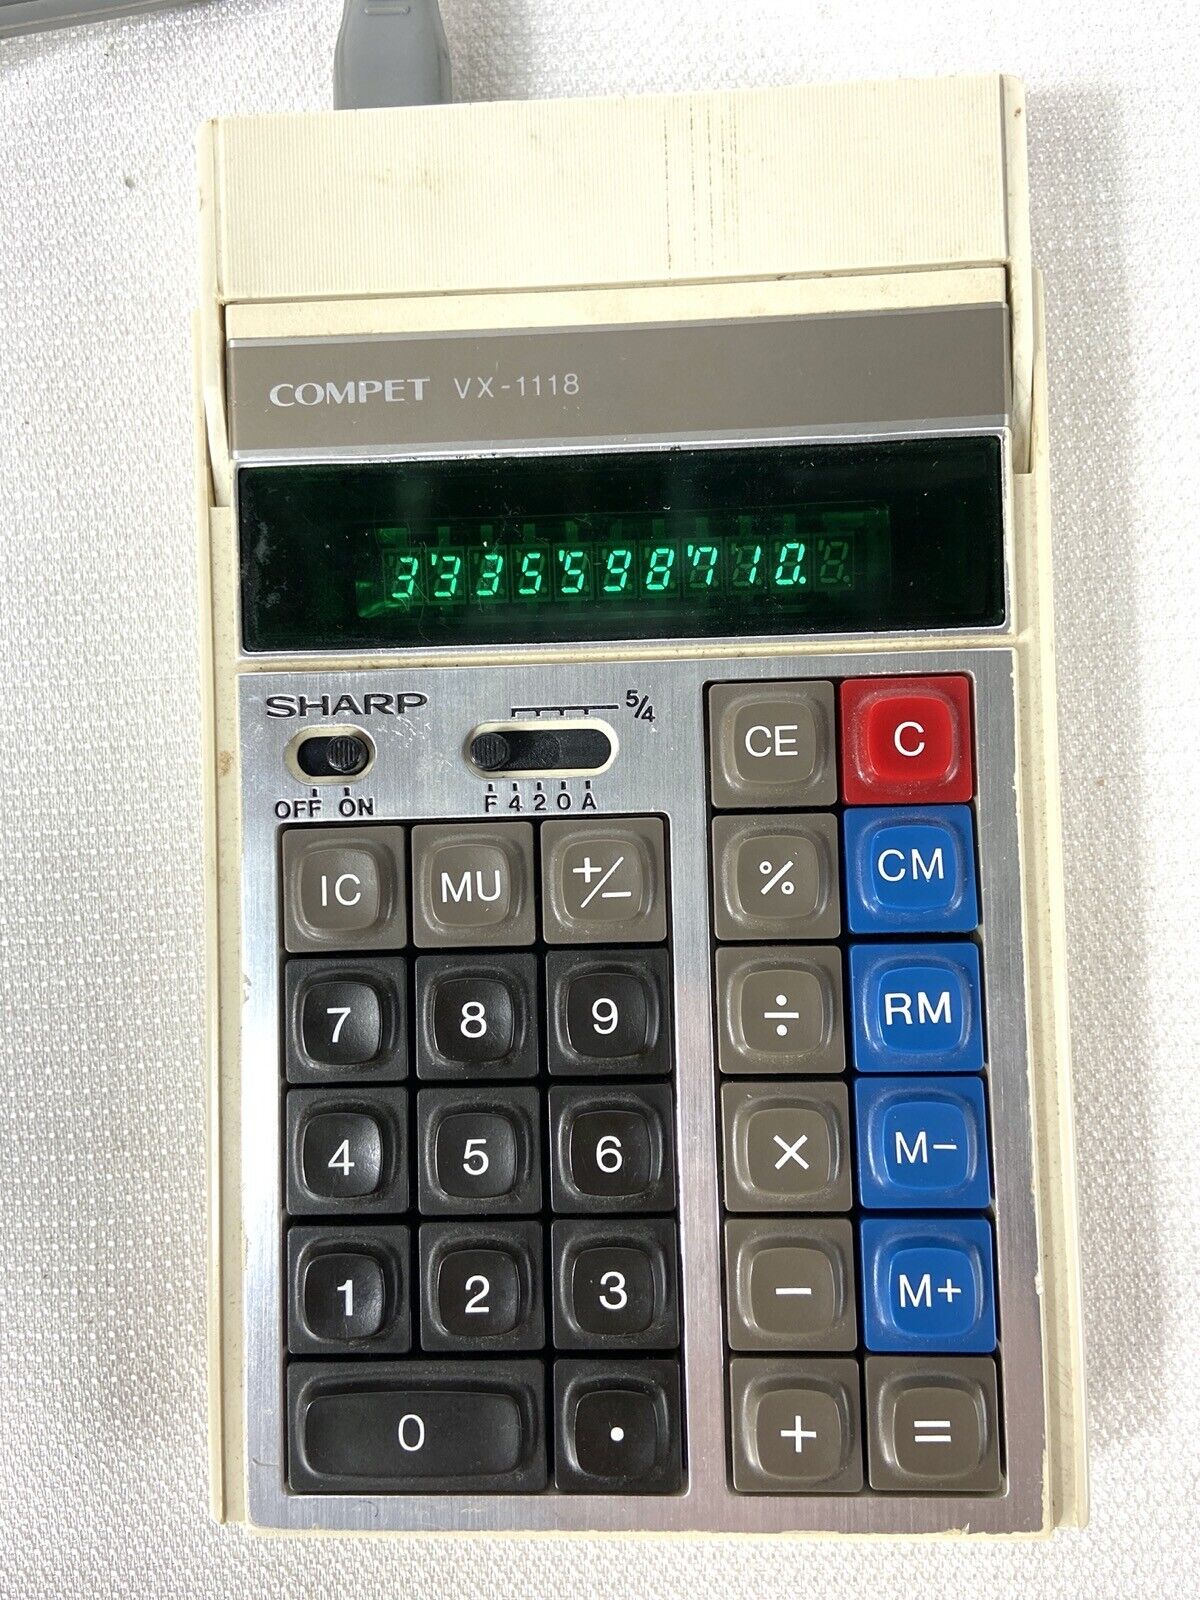 Vintage Sharp Compet VX-1118 Desktop Calculator